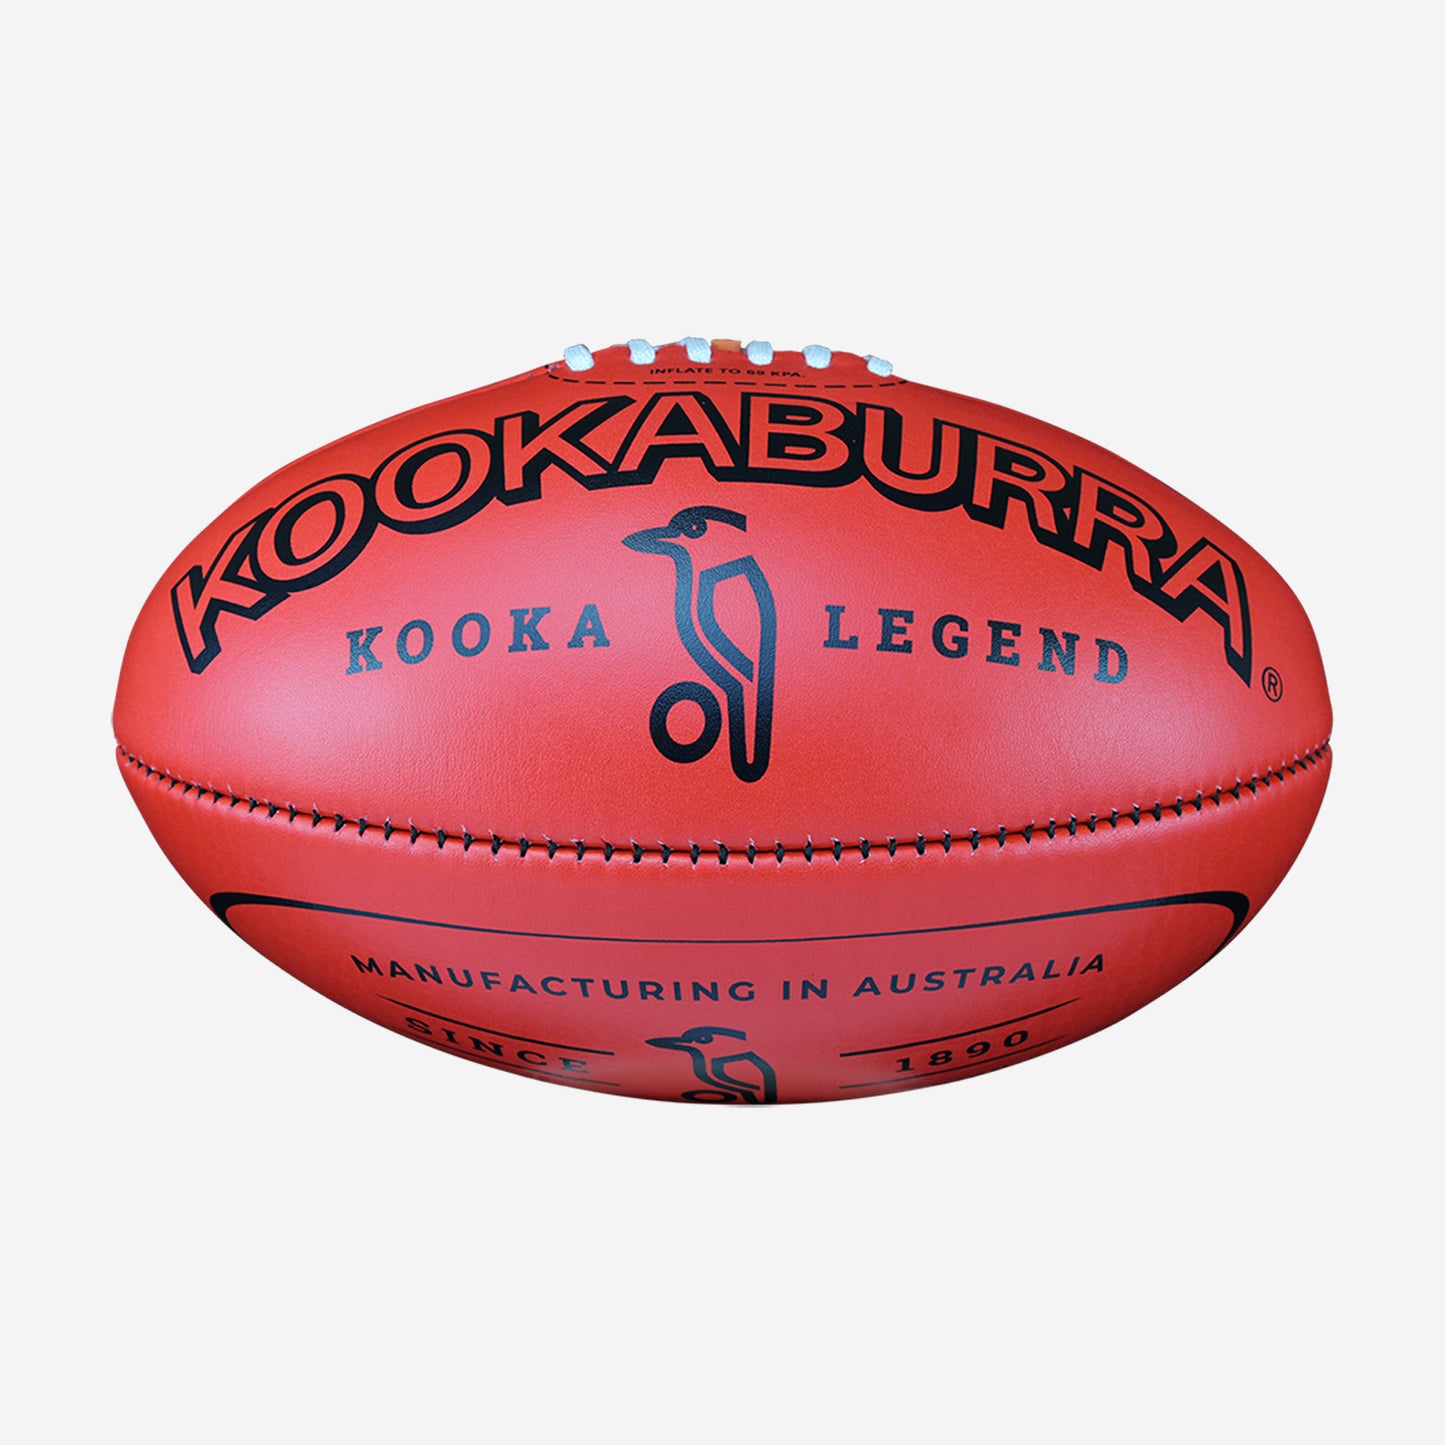 Kookaburra Legend Football - Red